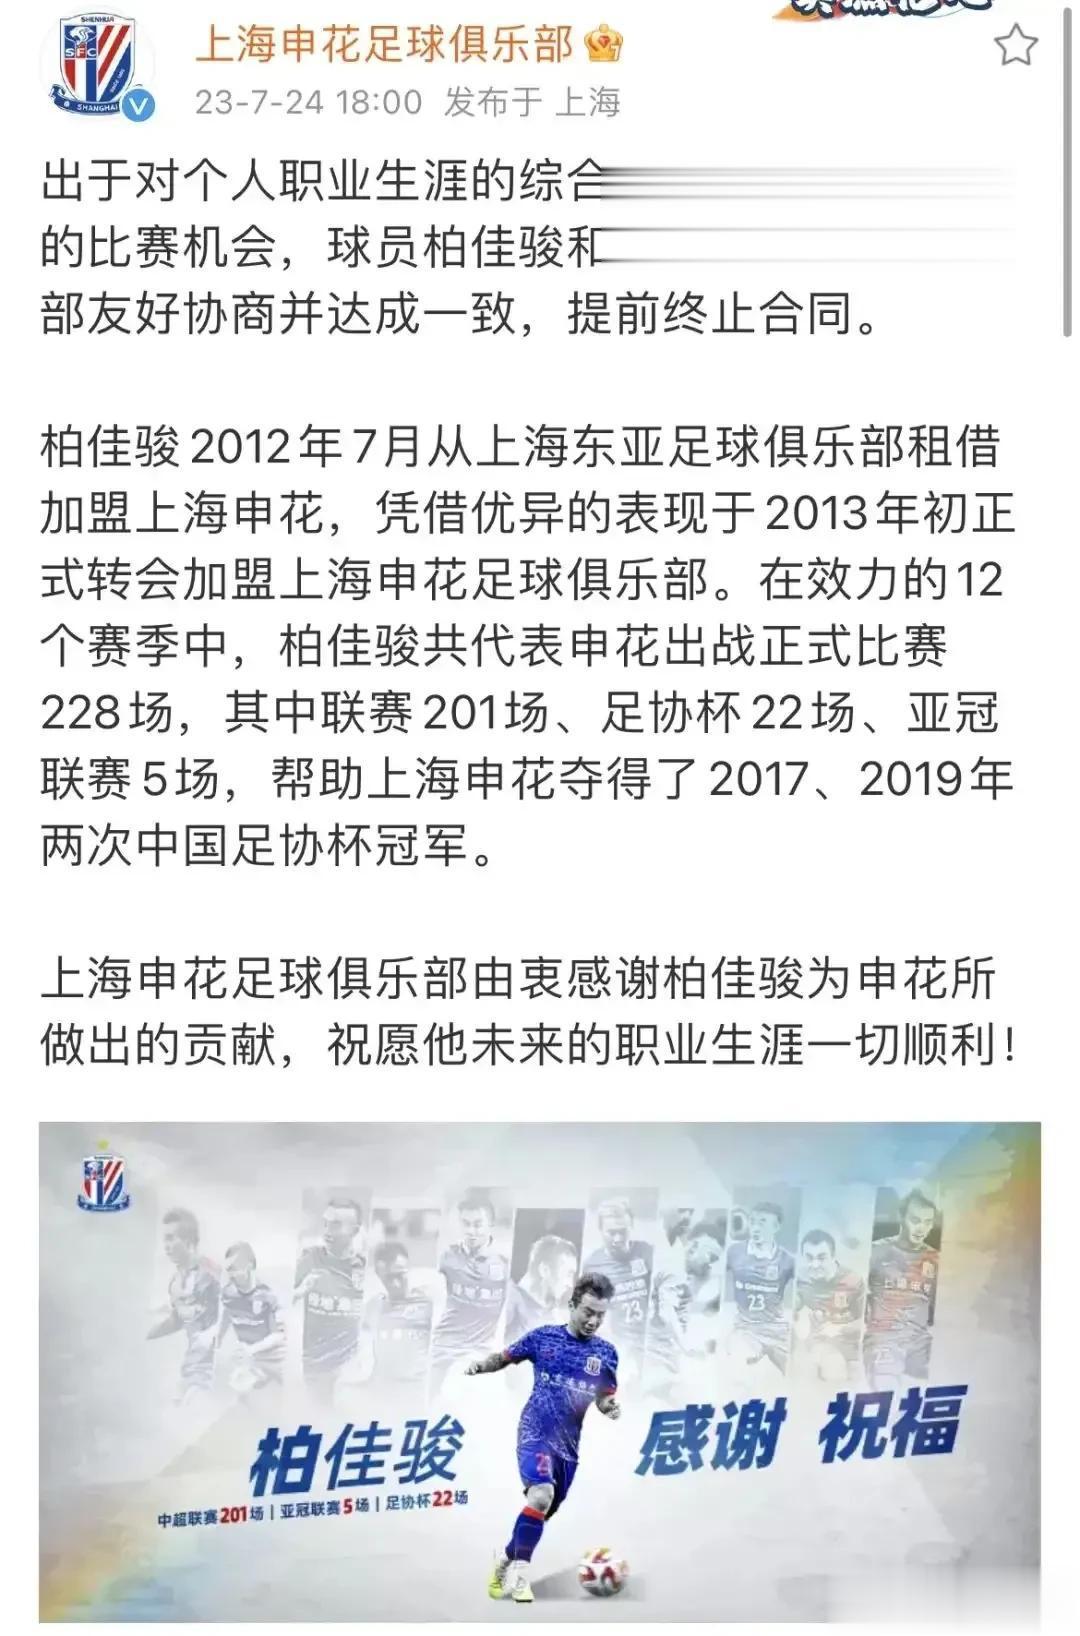 意外，上海申花与“功勋球员”柏佳骏提前解约！2012年7月，柏佳骏加入上海申花，(2)